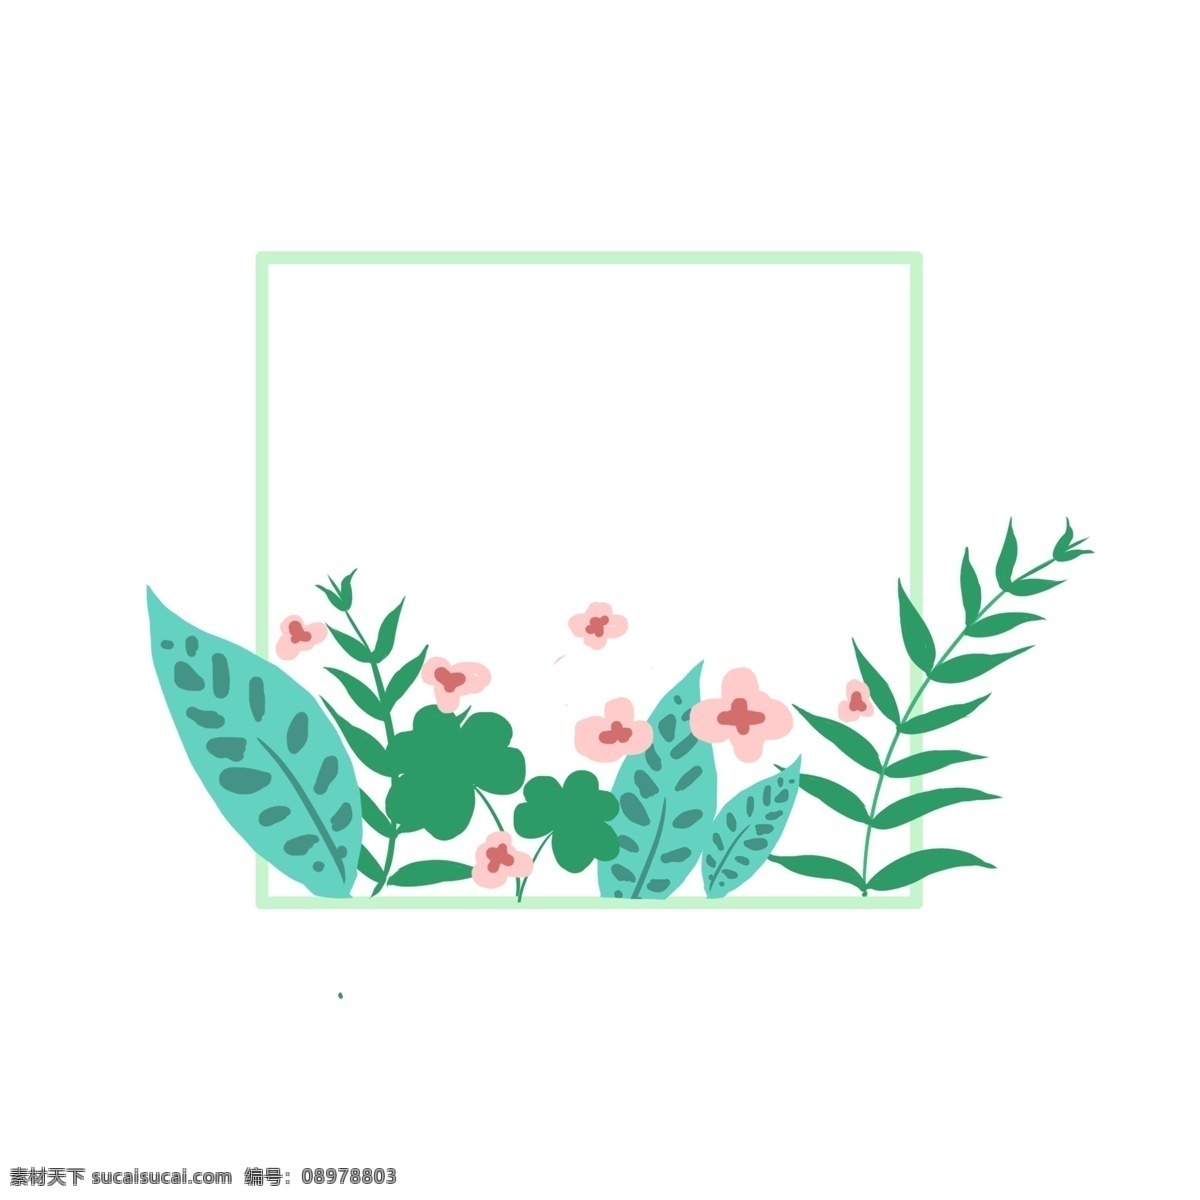 绿色 叶子 边框 插画 绿色的叶子 粉色的花朵 卡通边框 漂亮的边框 美丽的边框 边框插画 小物边框 蓝色的叶子